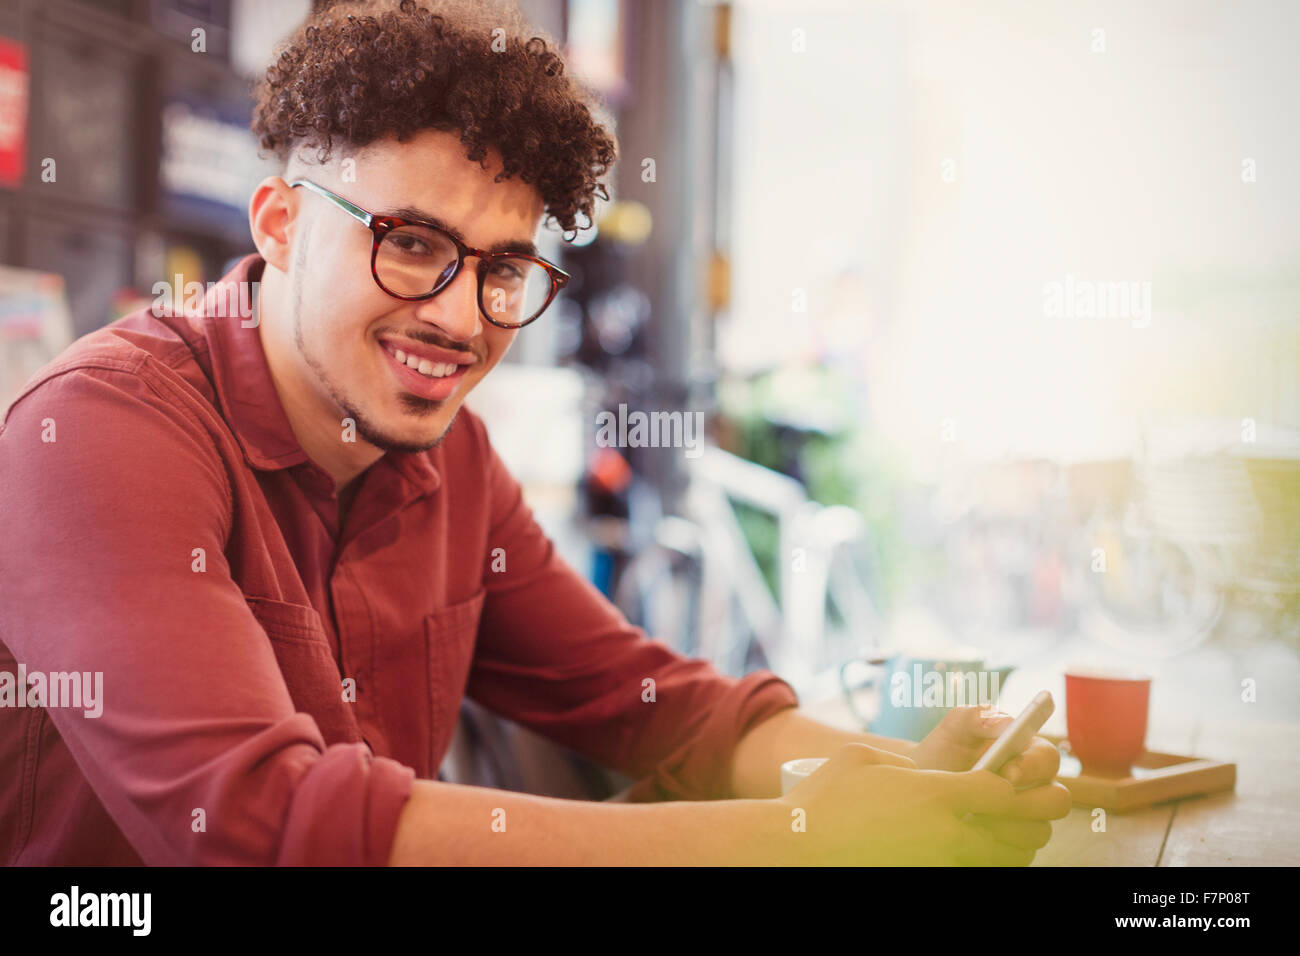 Portrait of smiling man avec les cheveux noirs bouclés texting in cafe Banque D'Images